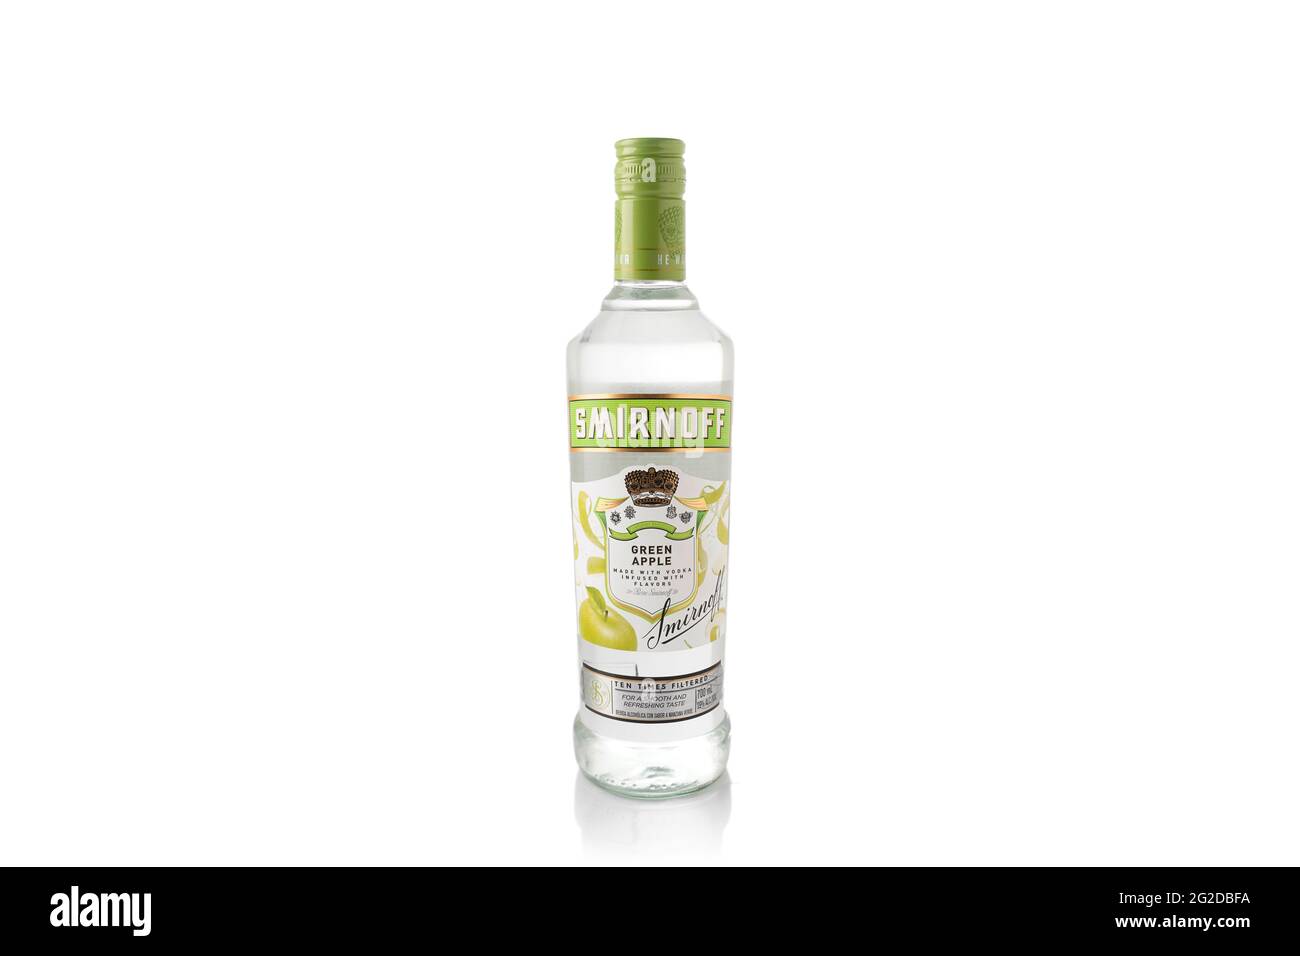 Smirnoff bottiglia di Vodka di Apple su sfondo bianco. Bevanda alcolica. Bevanda russa Foto Stock